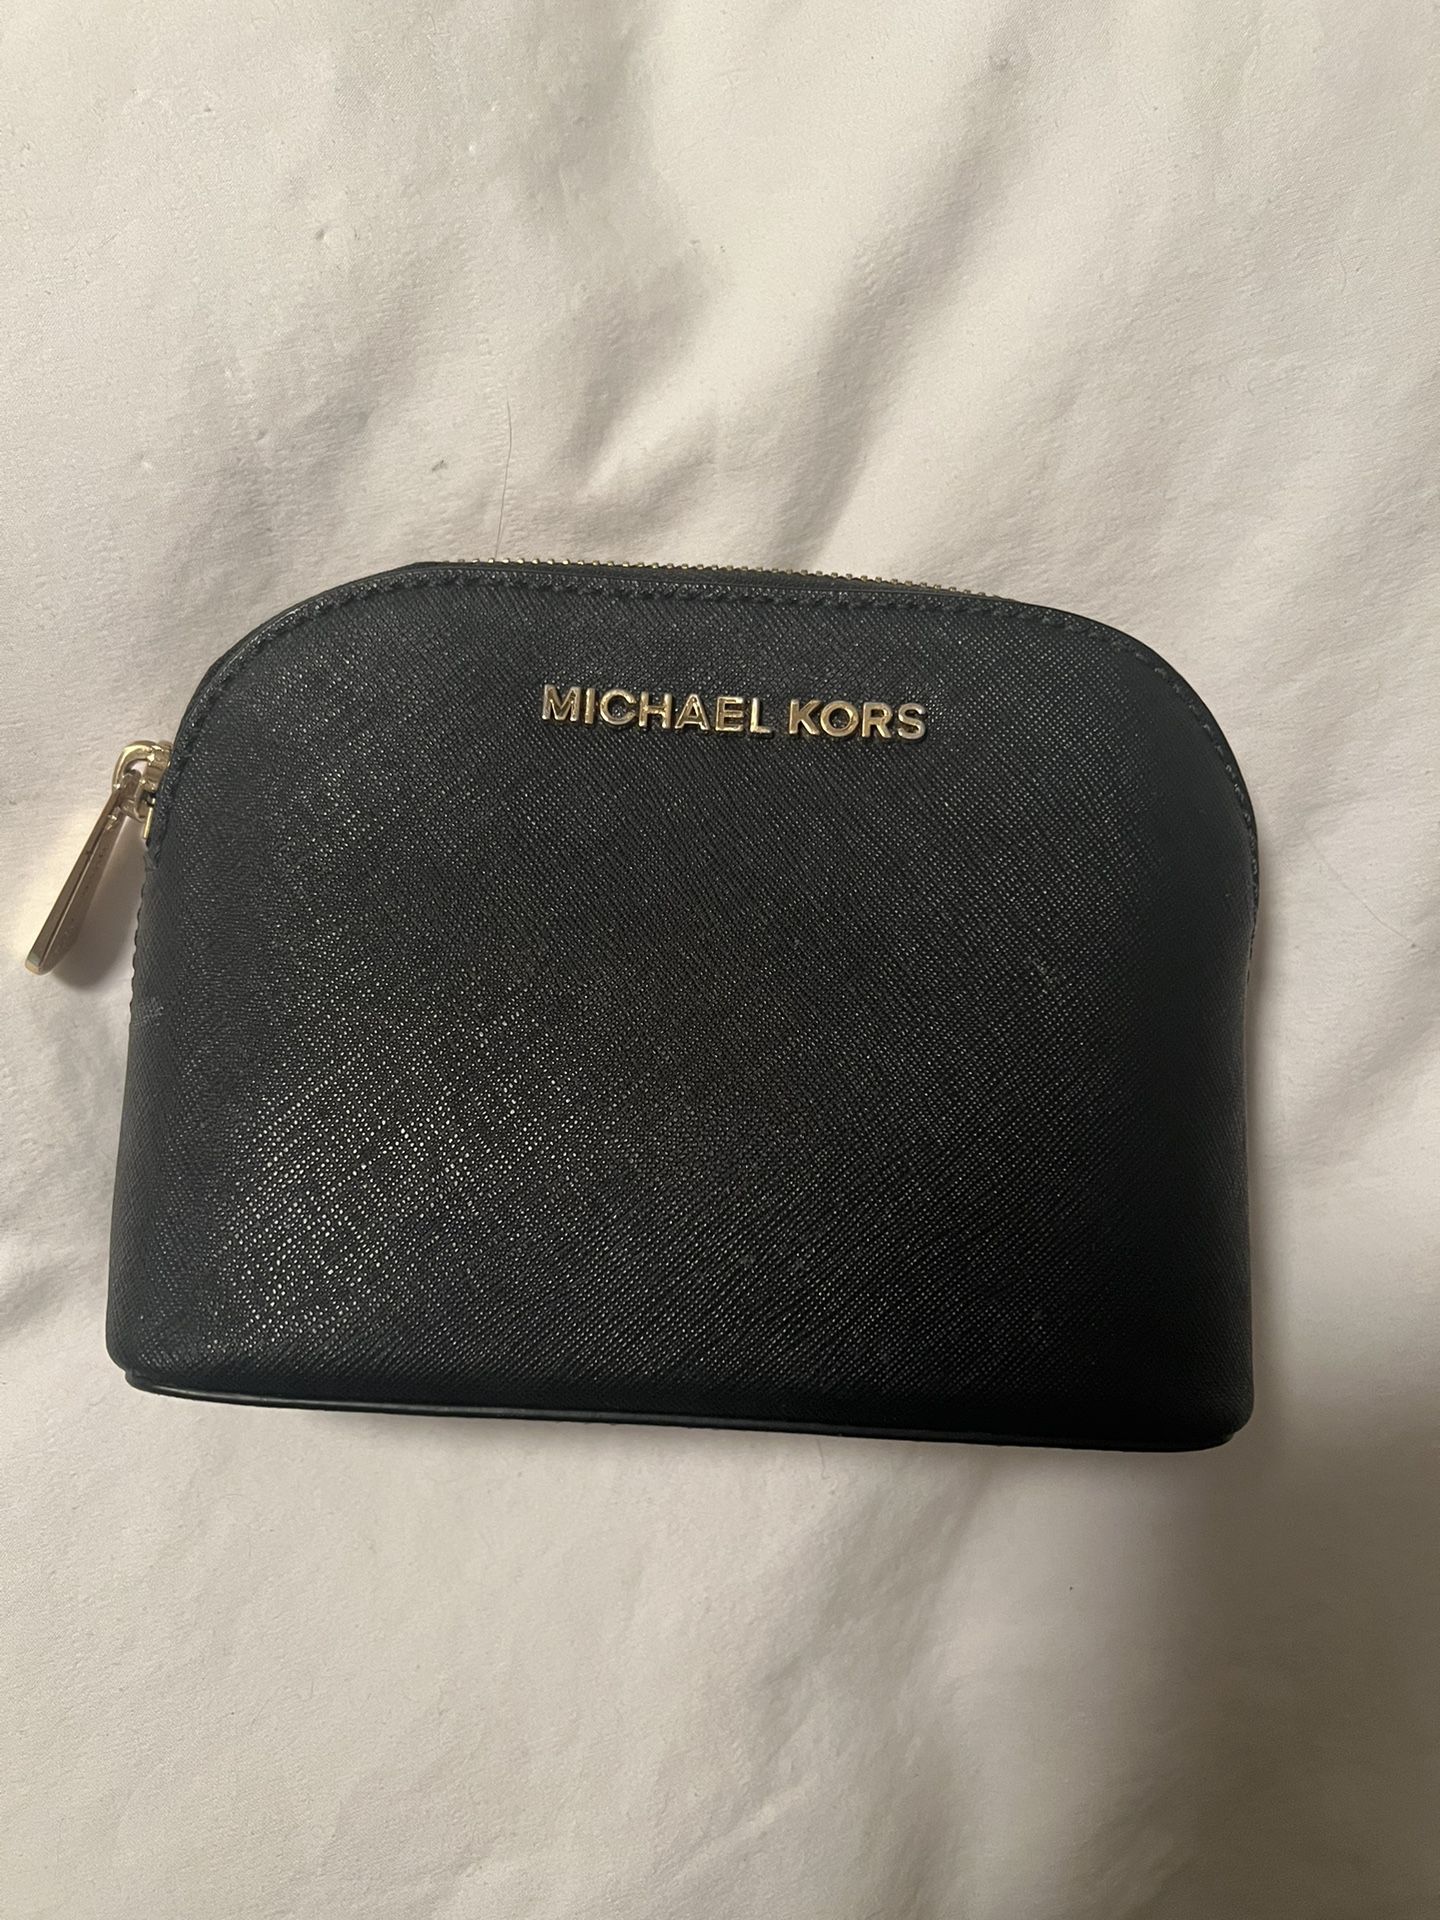 Michael Kors Small Bag